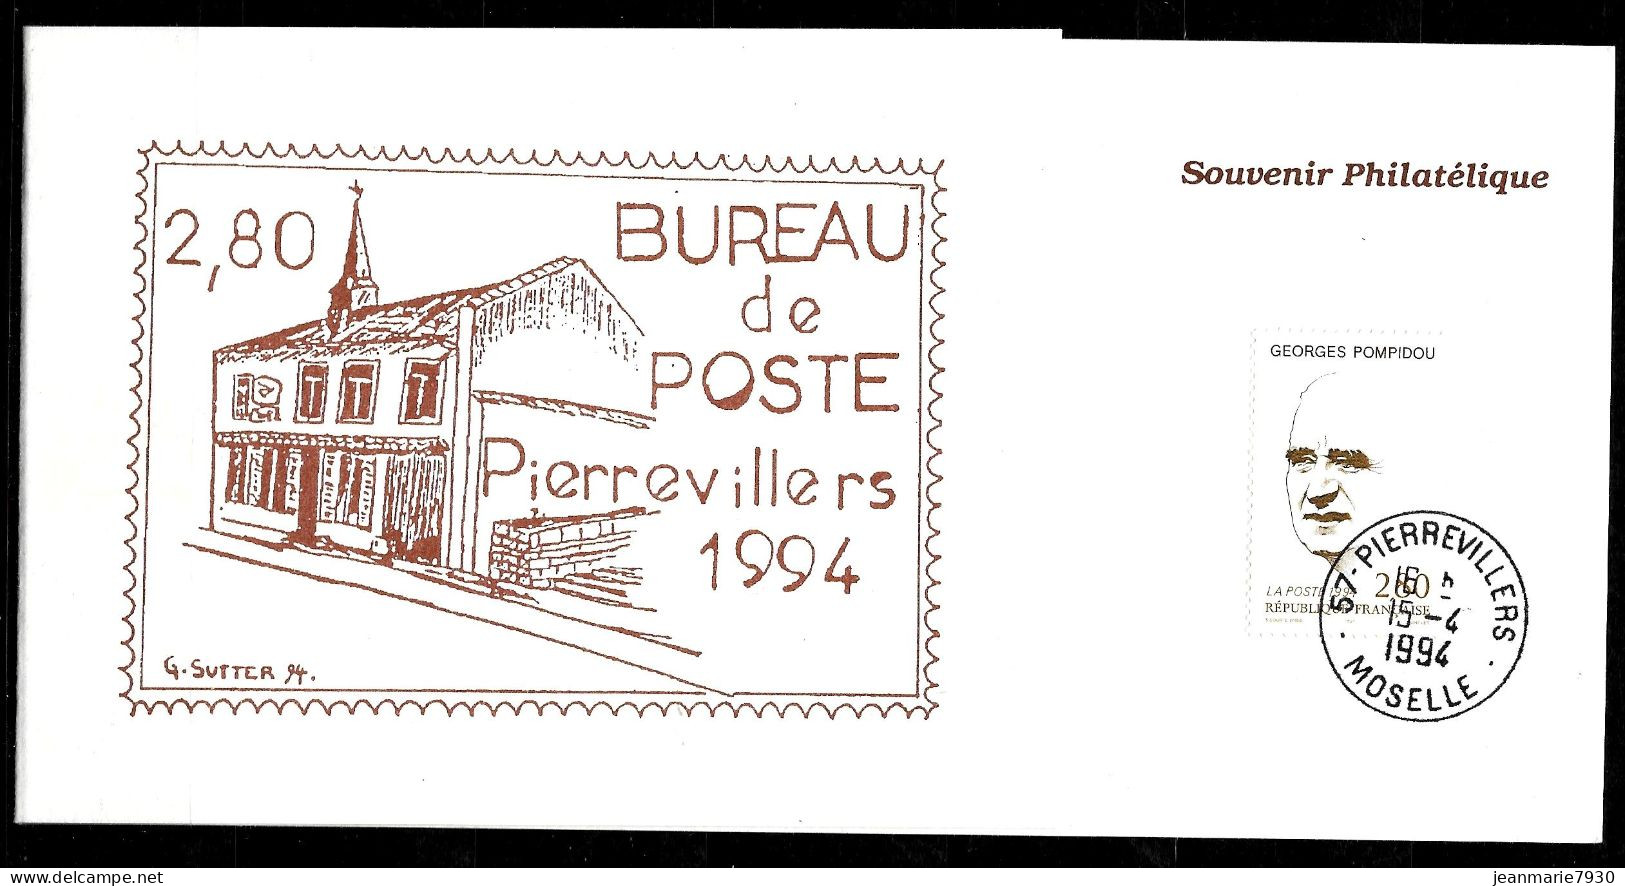 P234 - SOUVENIR PHILATELIQUE DE PIERREVILLERS DU 15/04/94 - Commemorative Postmarks